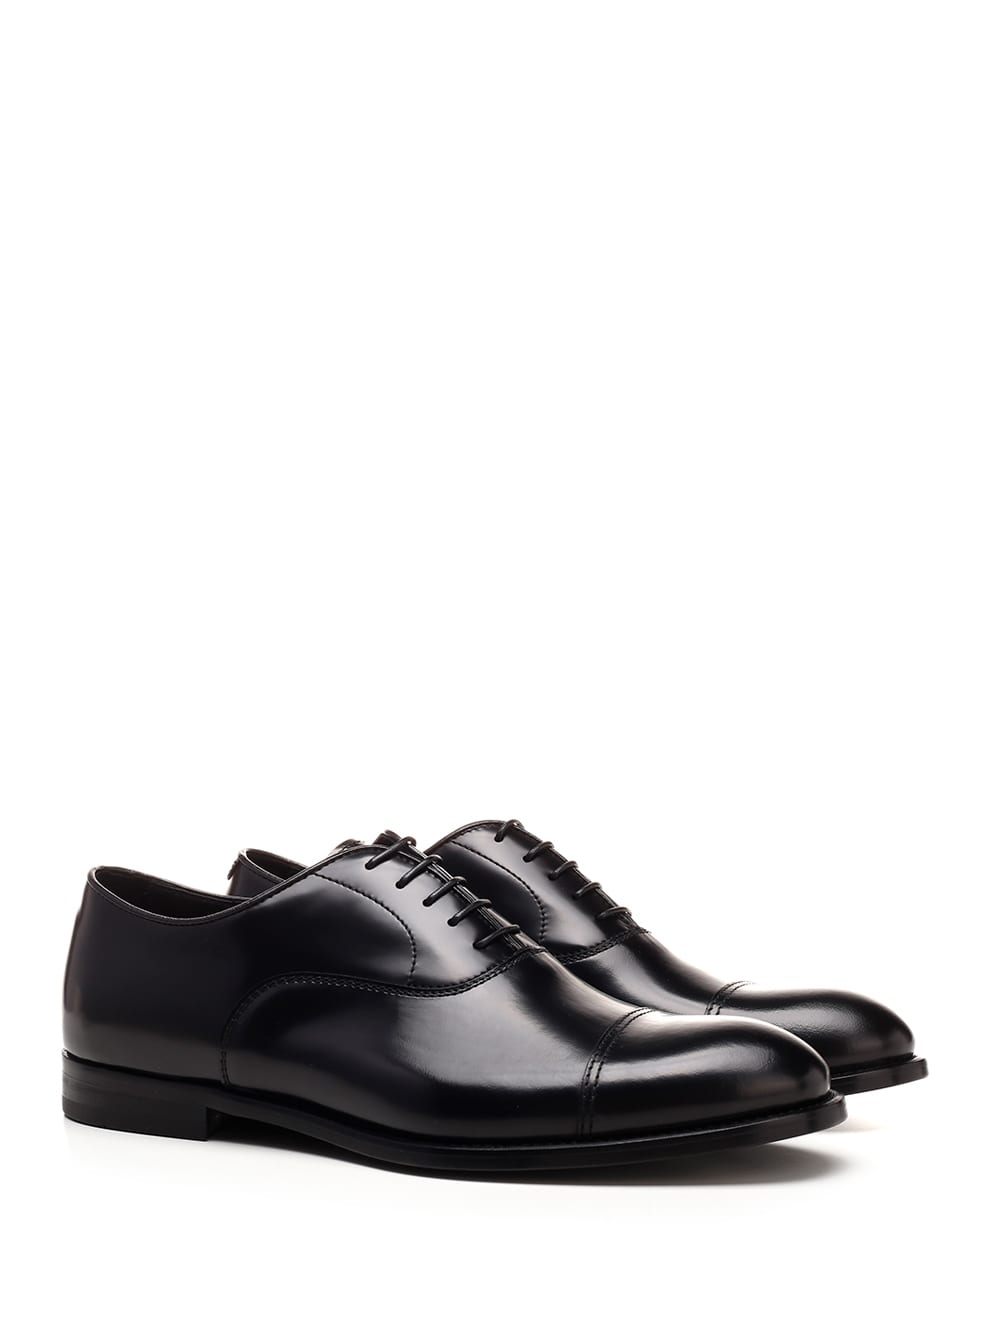 Shop Doucal's Black Oxford Shoes